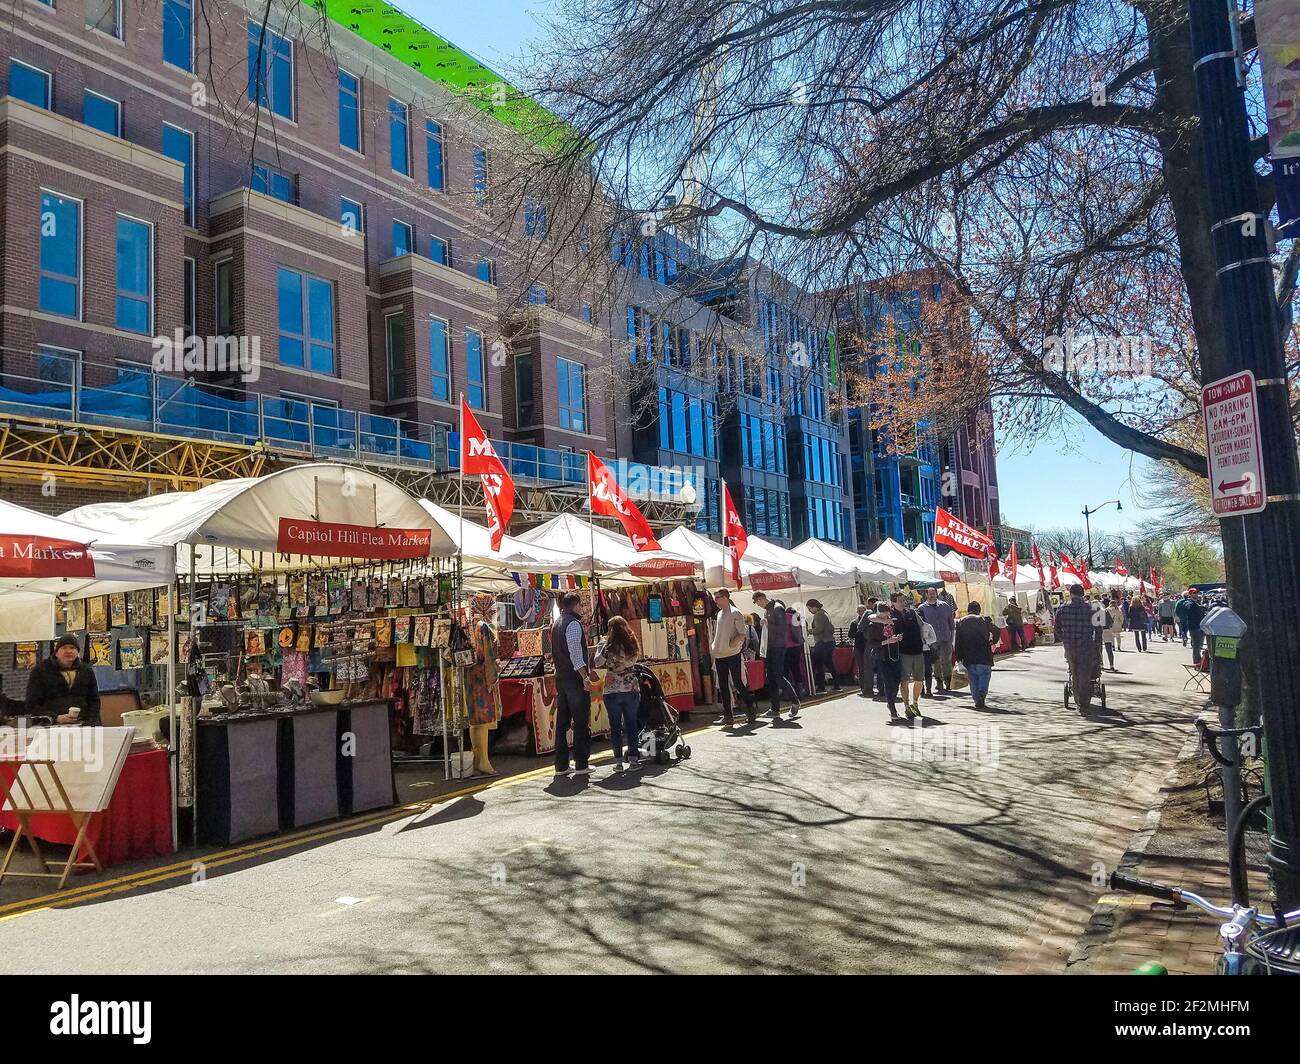 8 avril 2017 Washington DC Capitol Hill Flea Market a installé la rue aglon avec les gens de shopping Banque D'Images